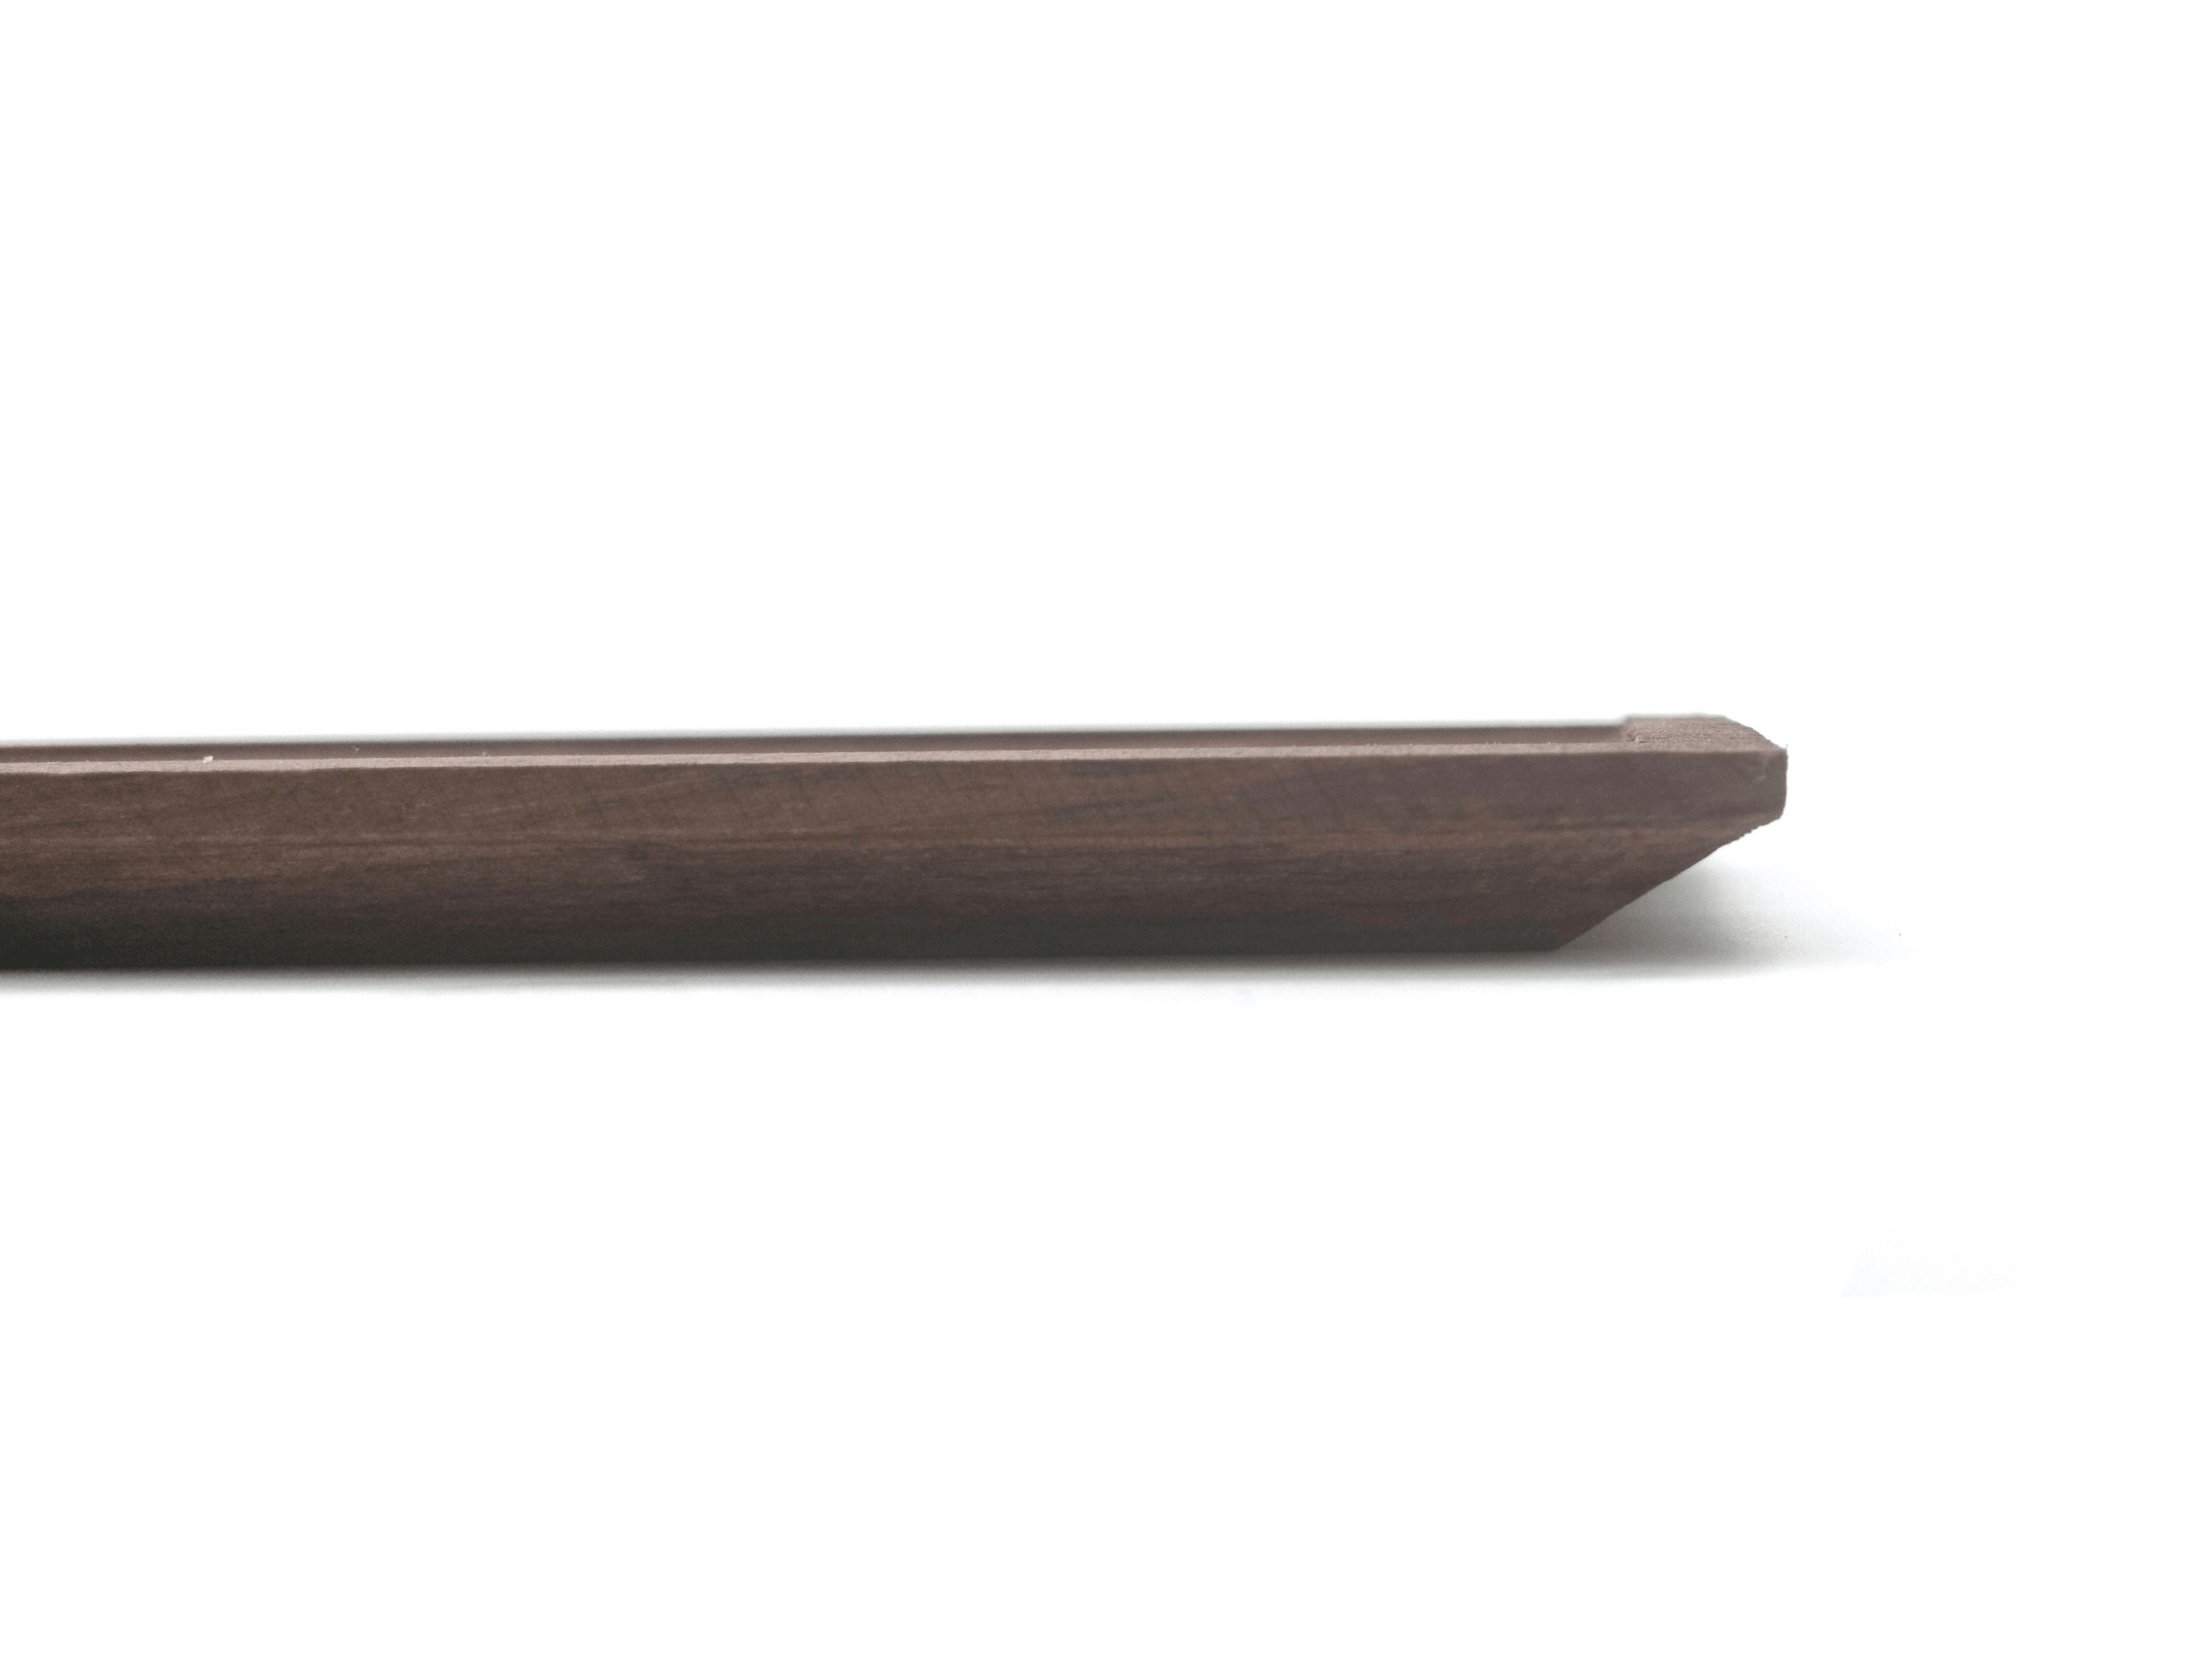 Walnut Serving Tray - Plate | Minimalist Design